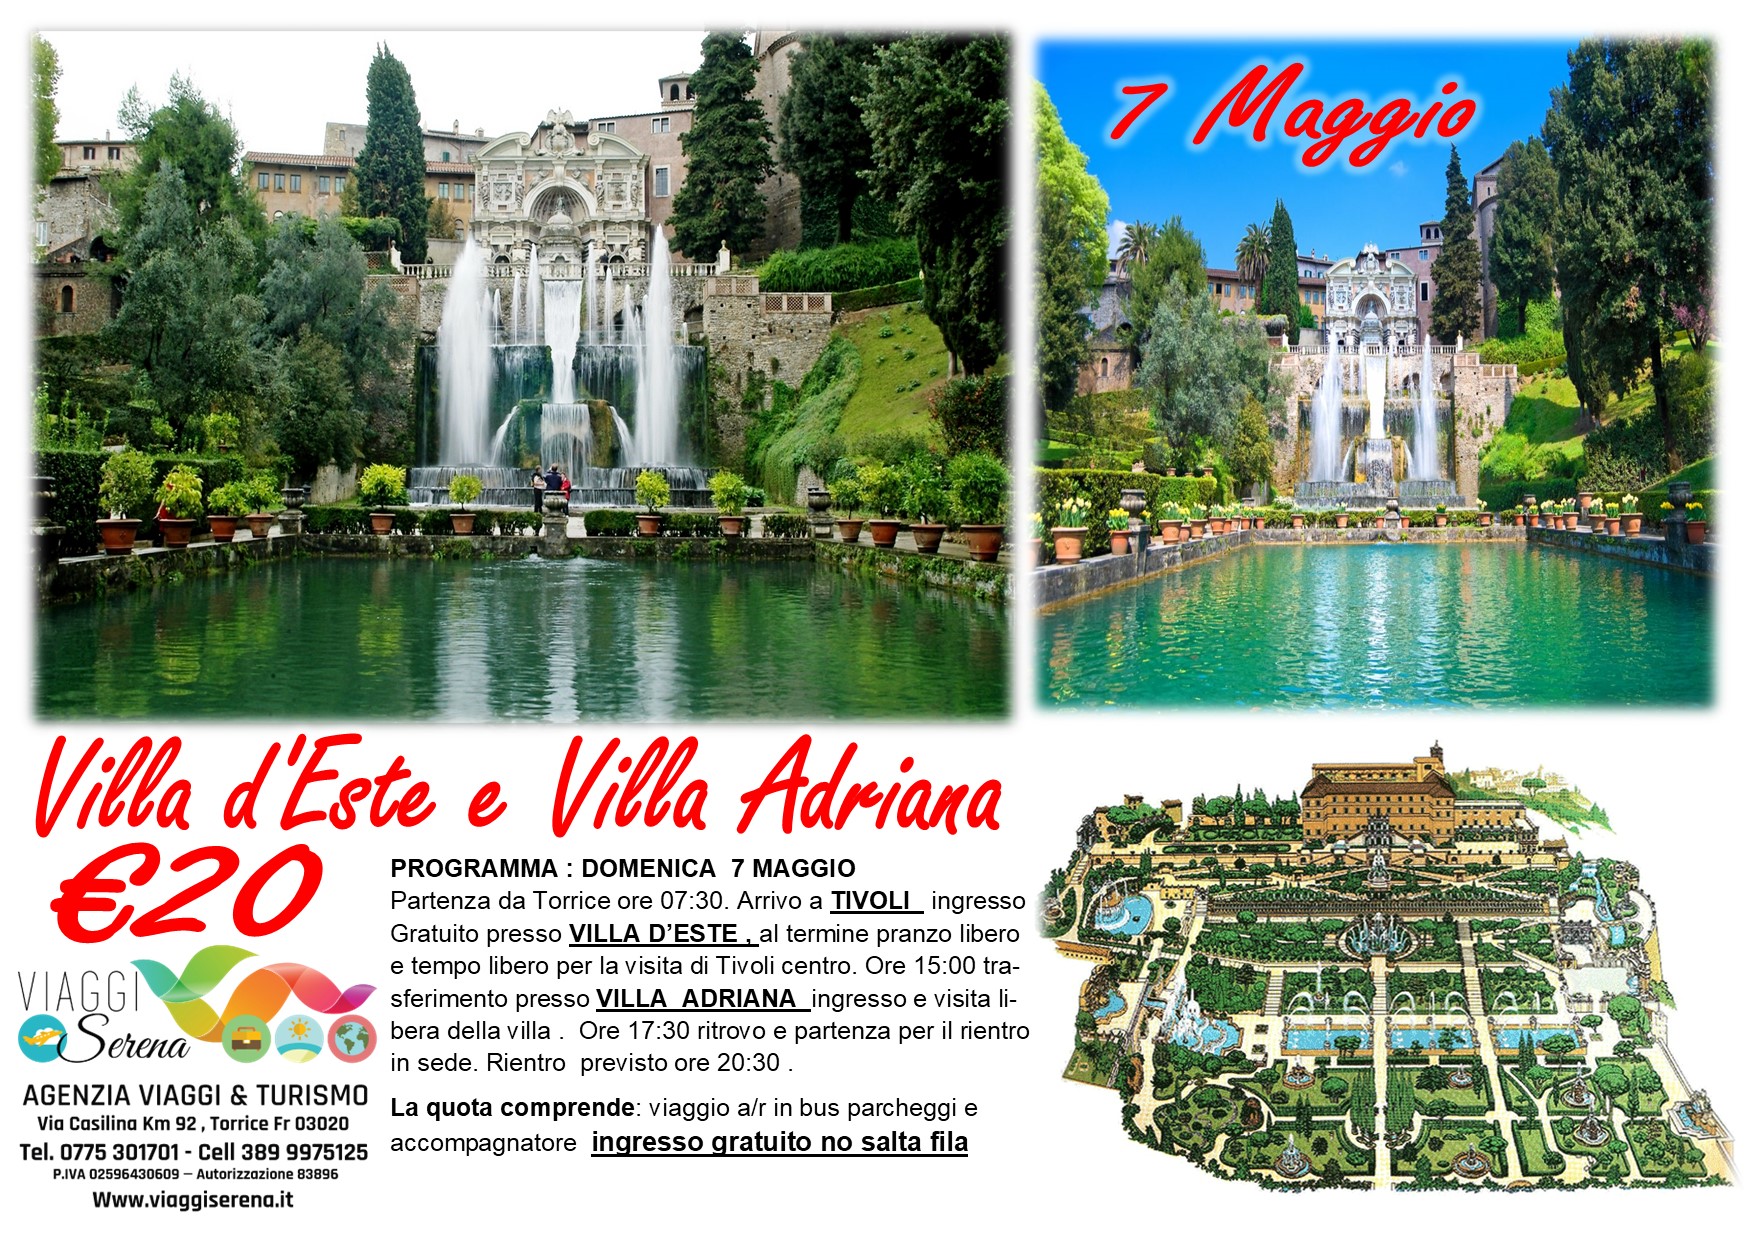 Viaggi di Gruppo: Villa d’Este & Villa Adriana 7 Maggio € 20,00